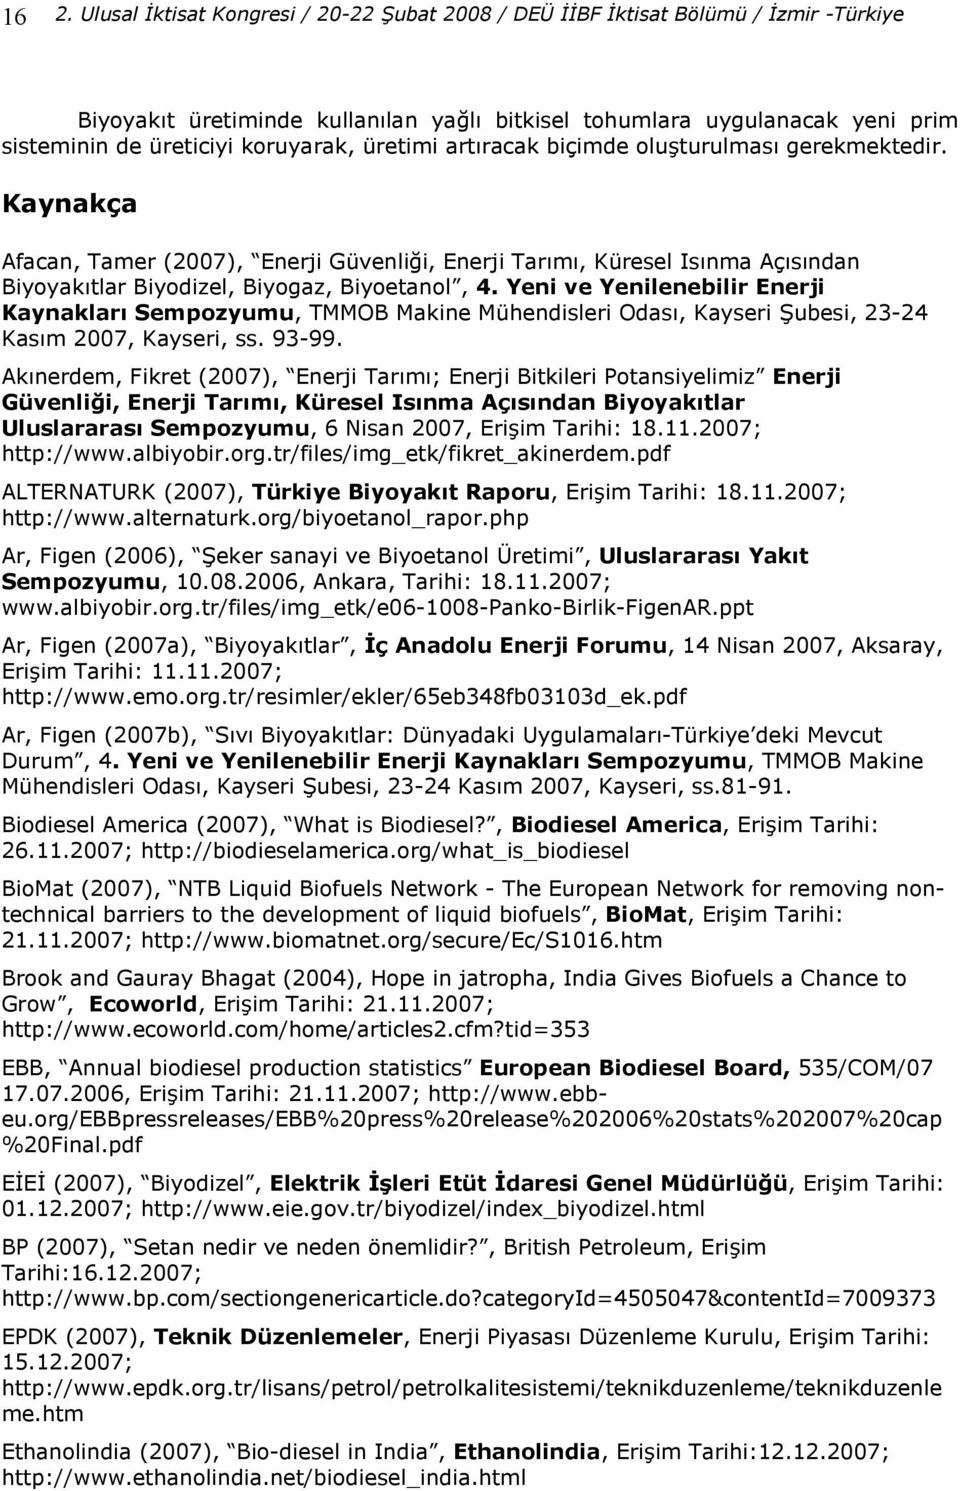 Yeni ve Yenilenebilir Enerji Kaynaklar3 Sempozyumu, TMMOB Makine Mühendisleri Odas, Kayseri Qubesi, 23-24 Kasm 2007, Kayseri, ss. 93-99.